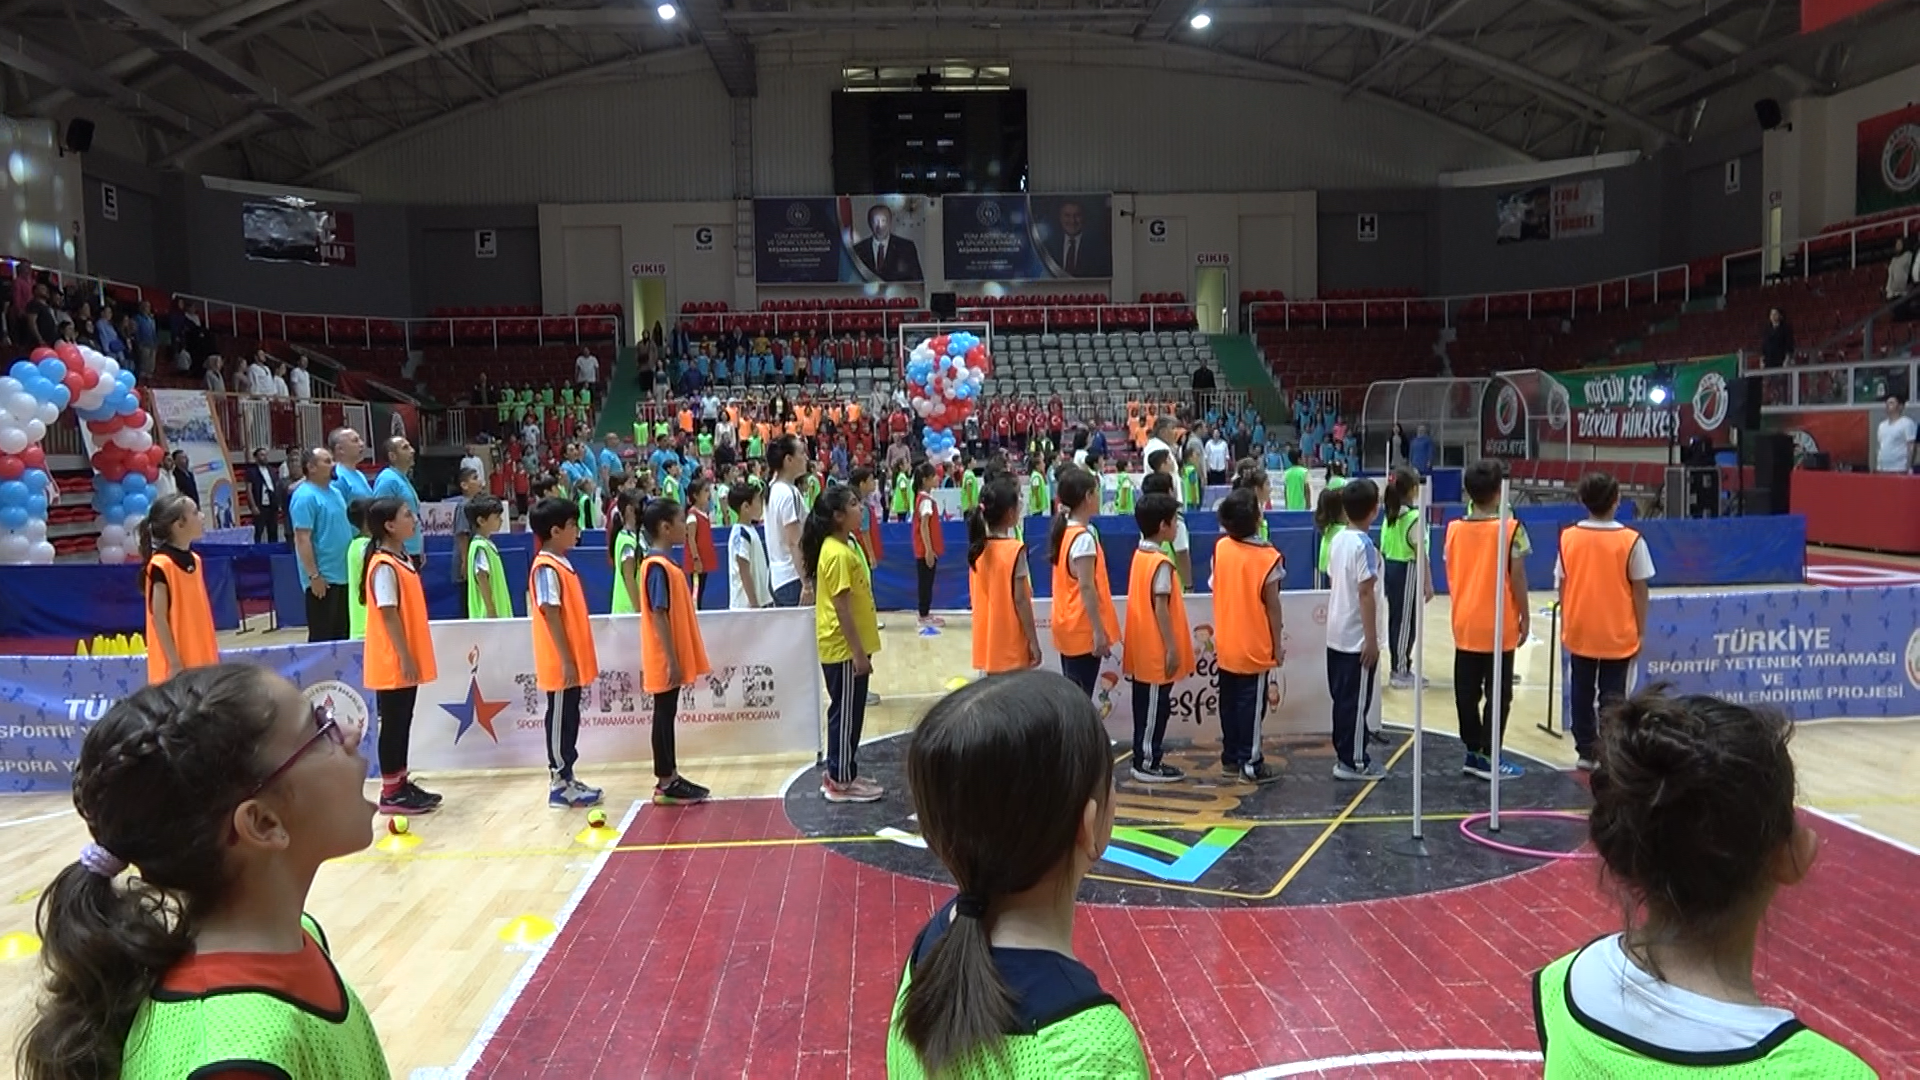 Yalova Cocuk Oyunlari Senlik Ortaokul Ilkokul Senlik Il Genclik Spor Milli Egitim (3)